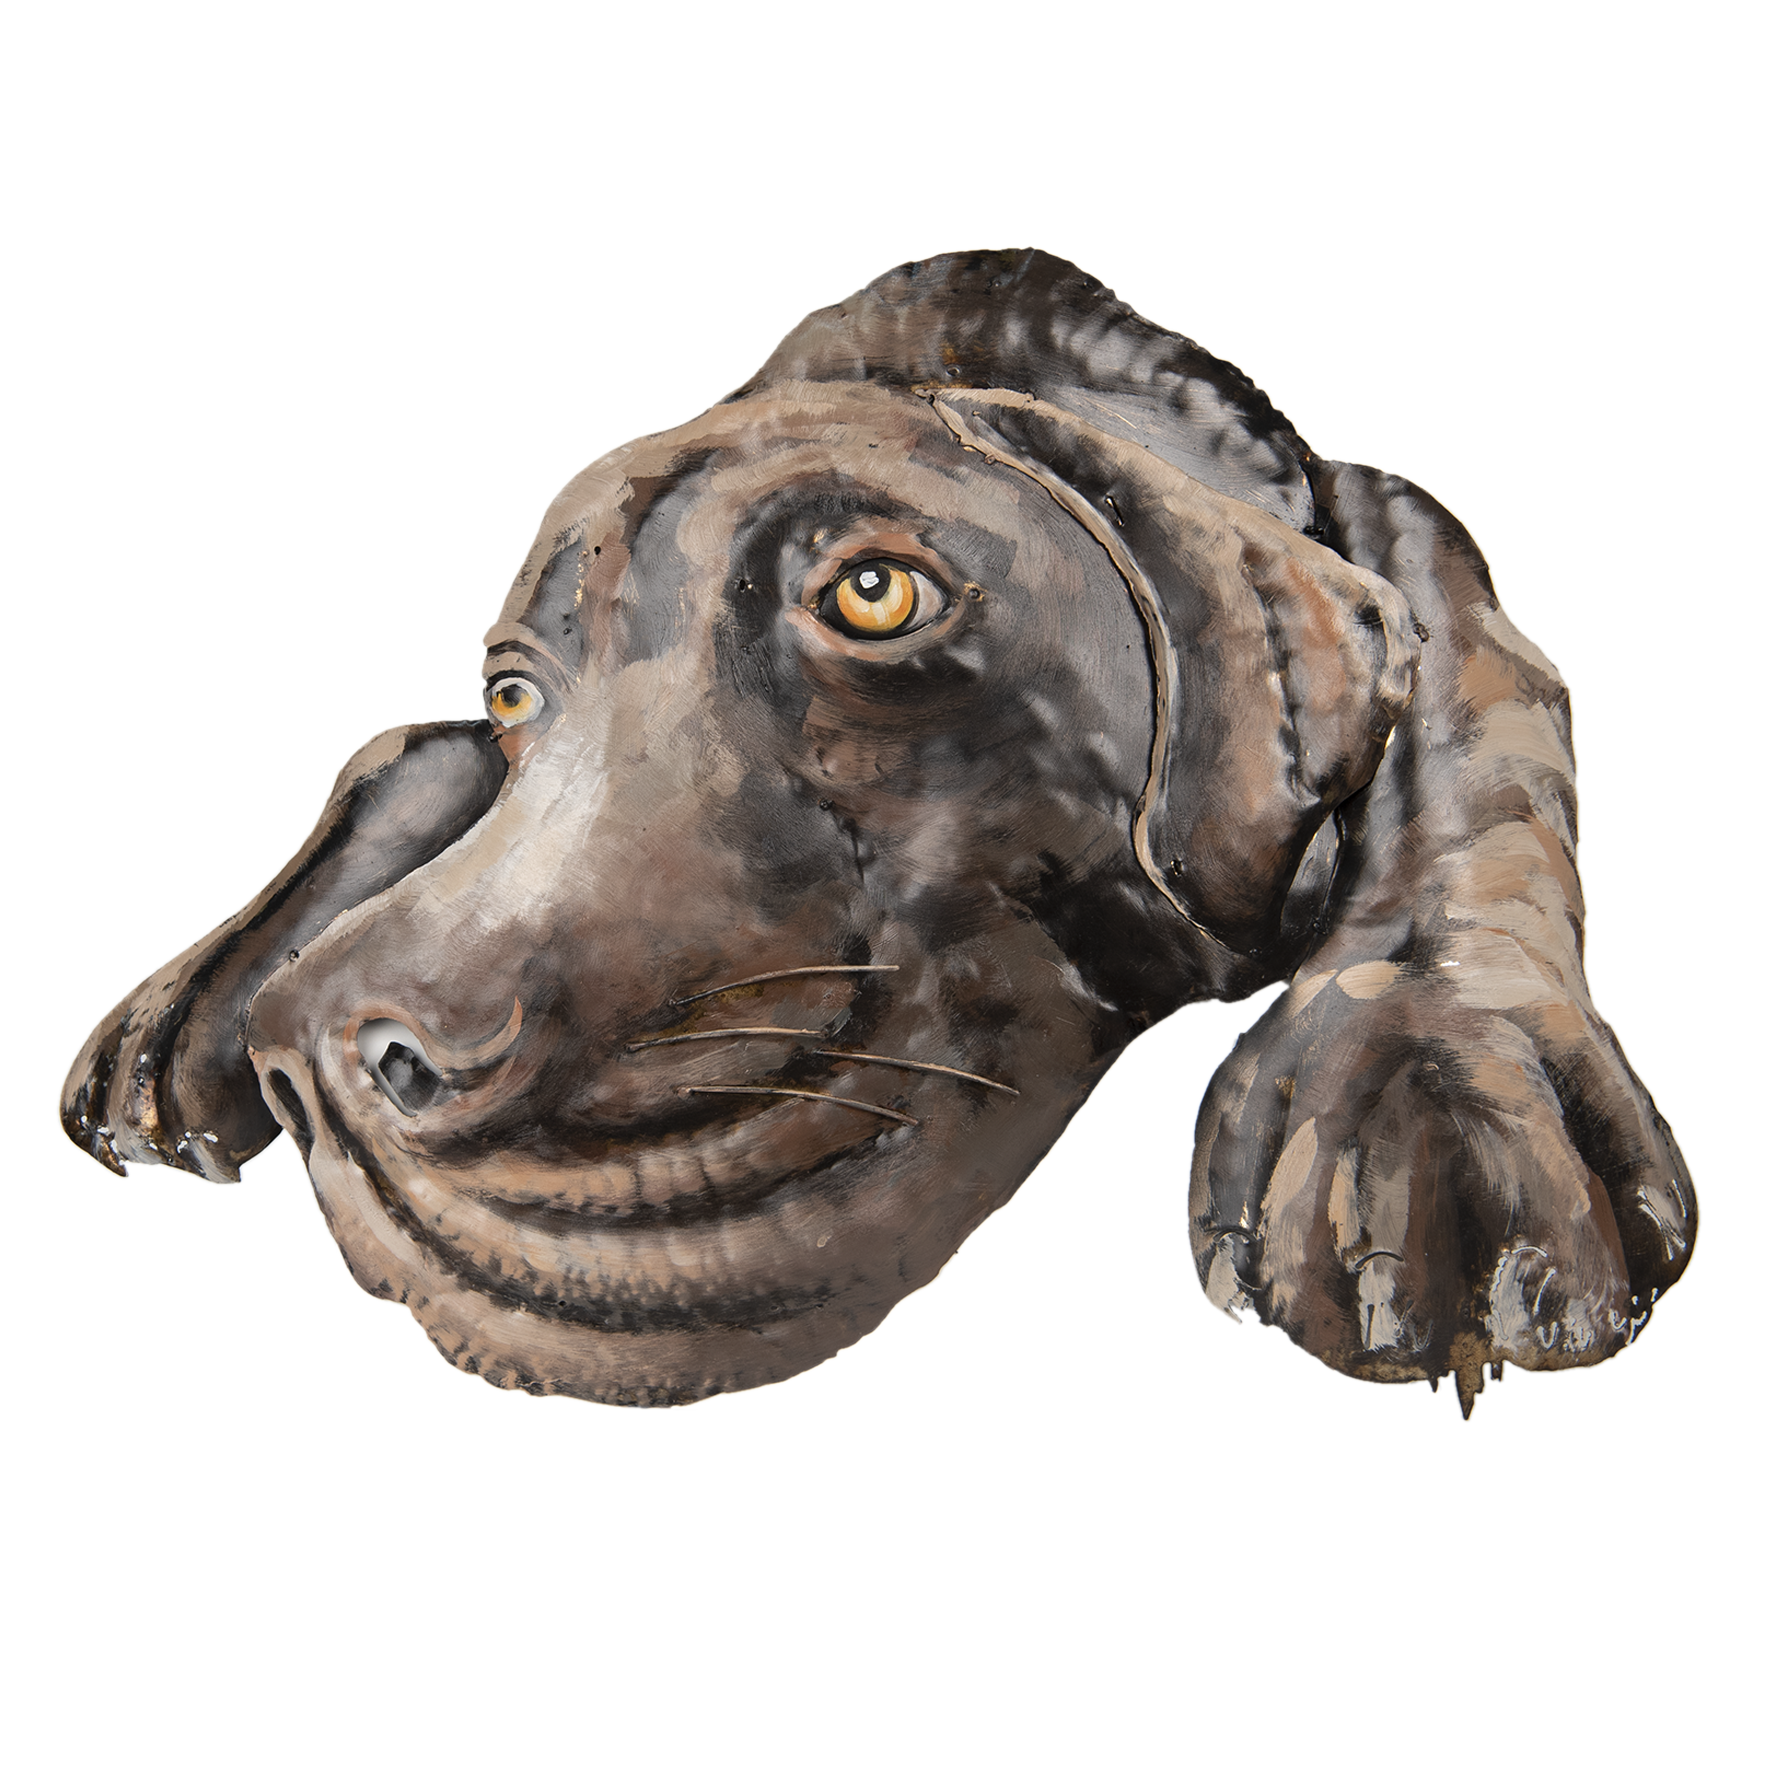 Clayre & Eef Wanddecoratie hond - 70*52*5 cm - meerkleurig - ijzer - hond - - 5WA0119